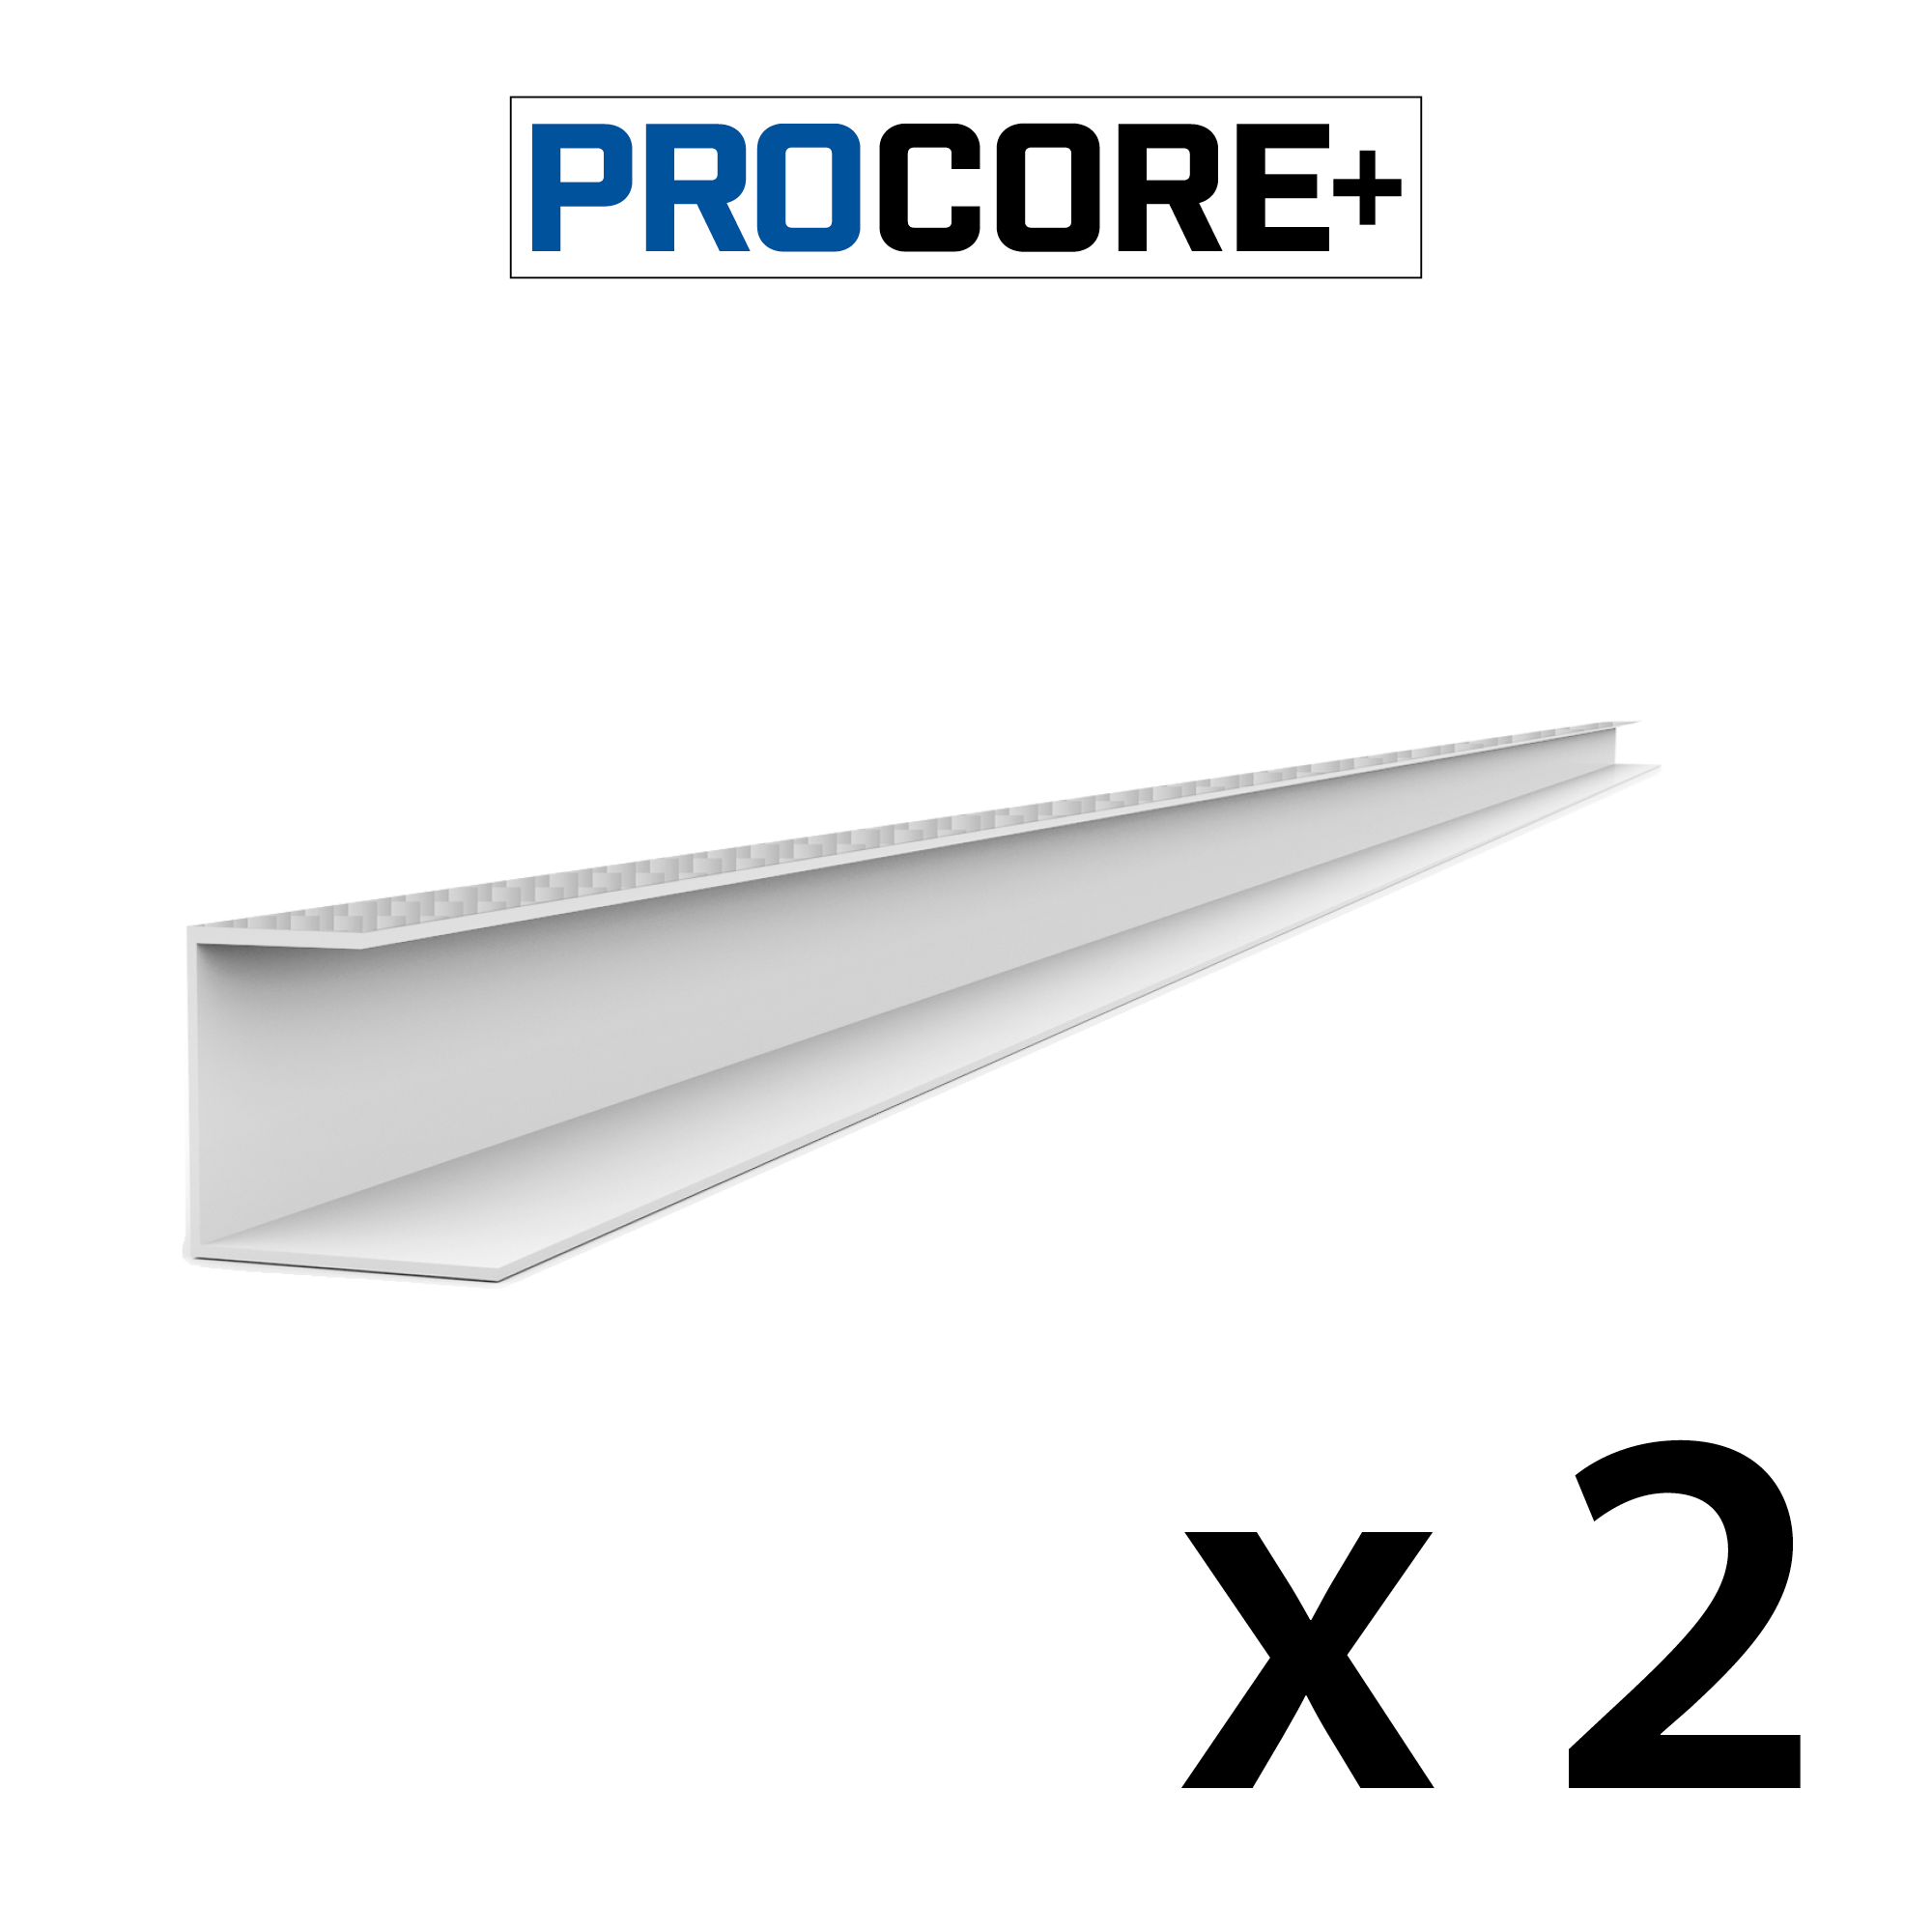 8 ft. PROCORE+ Silver gray carbon fiber PVC Side Trim Pack